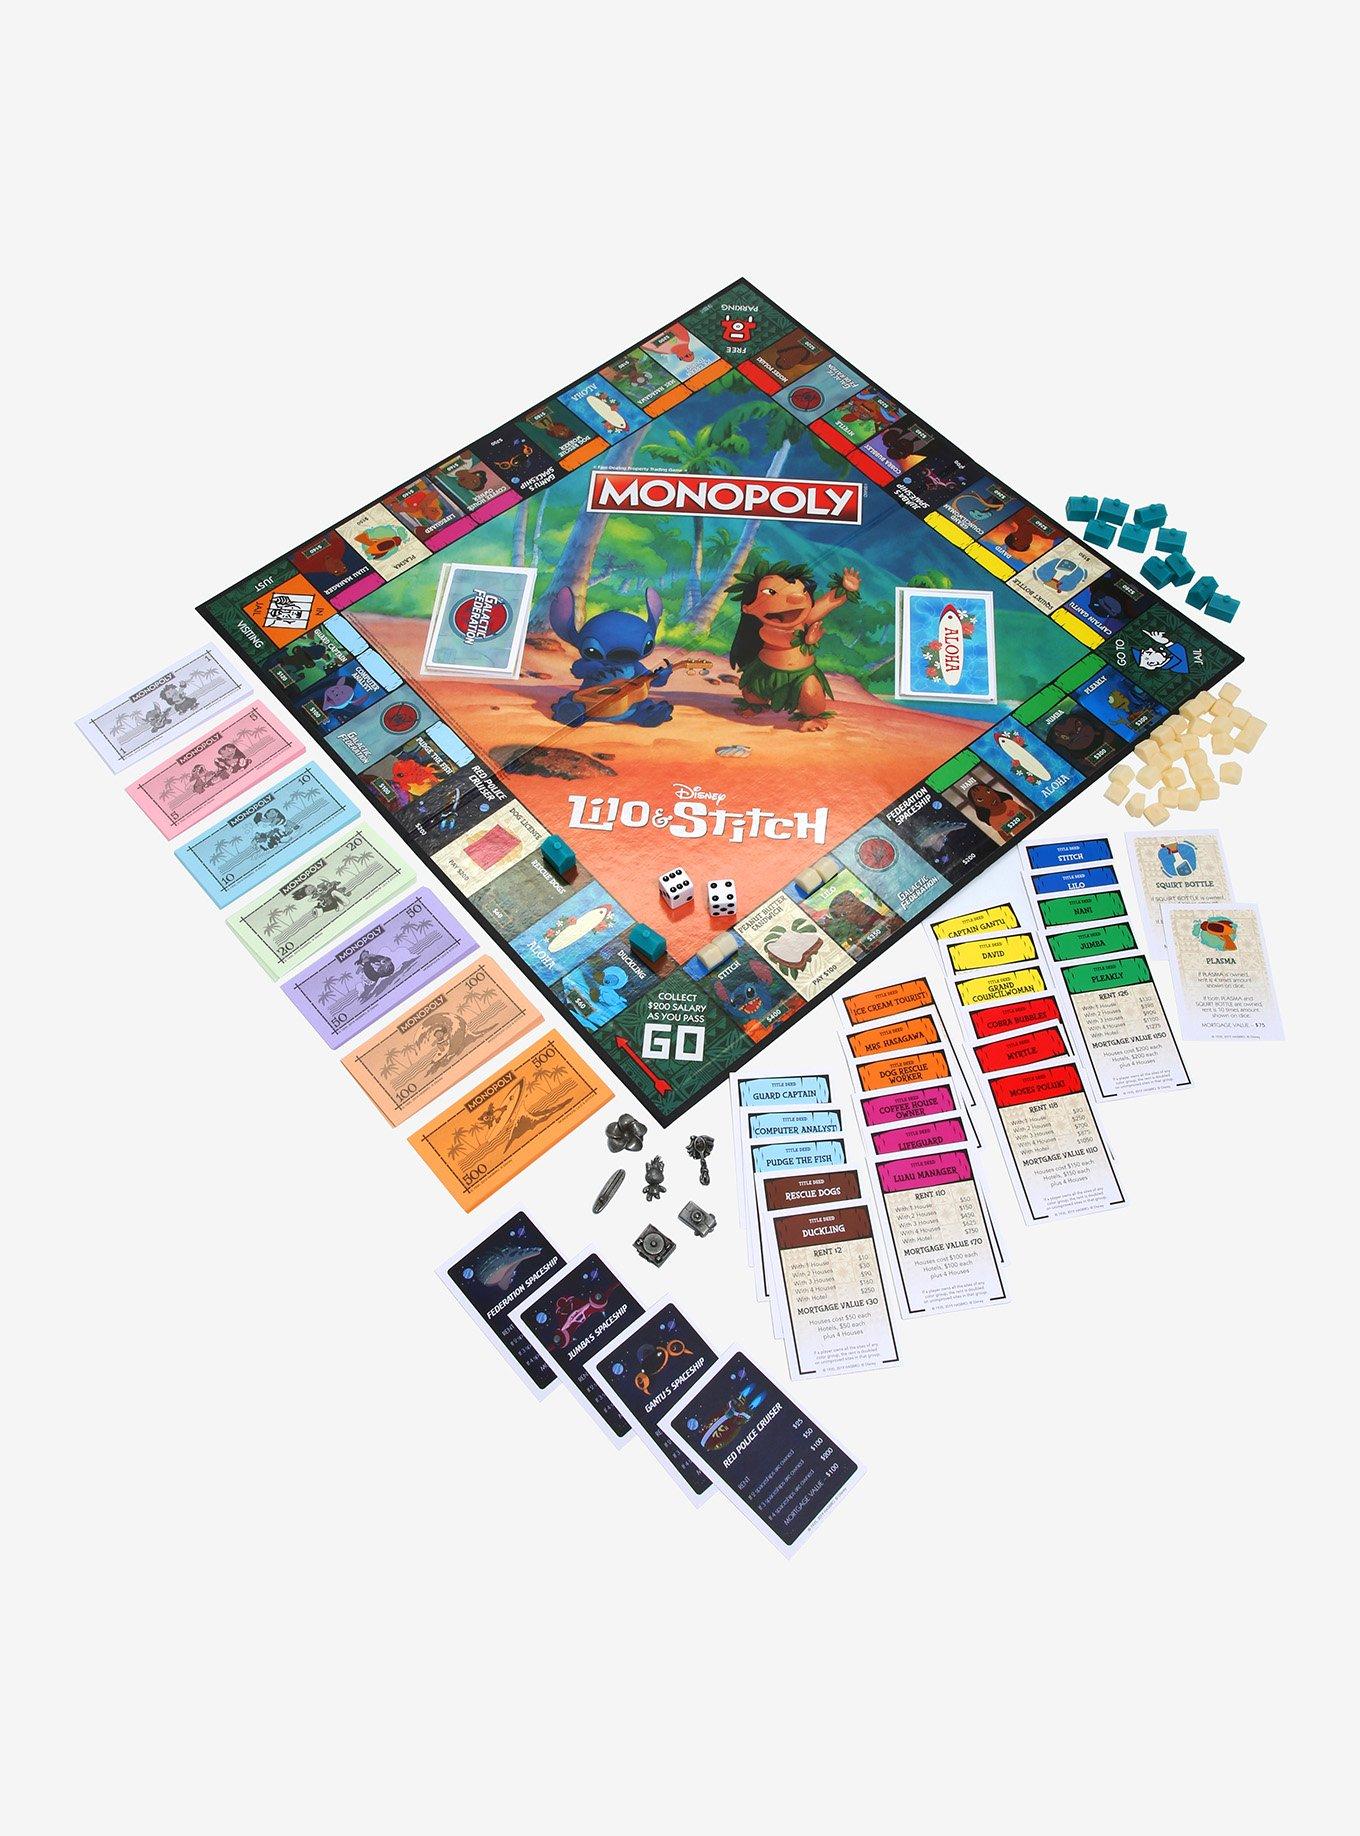 Monopoly - Lilo & Stitch